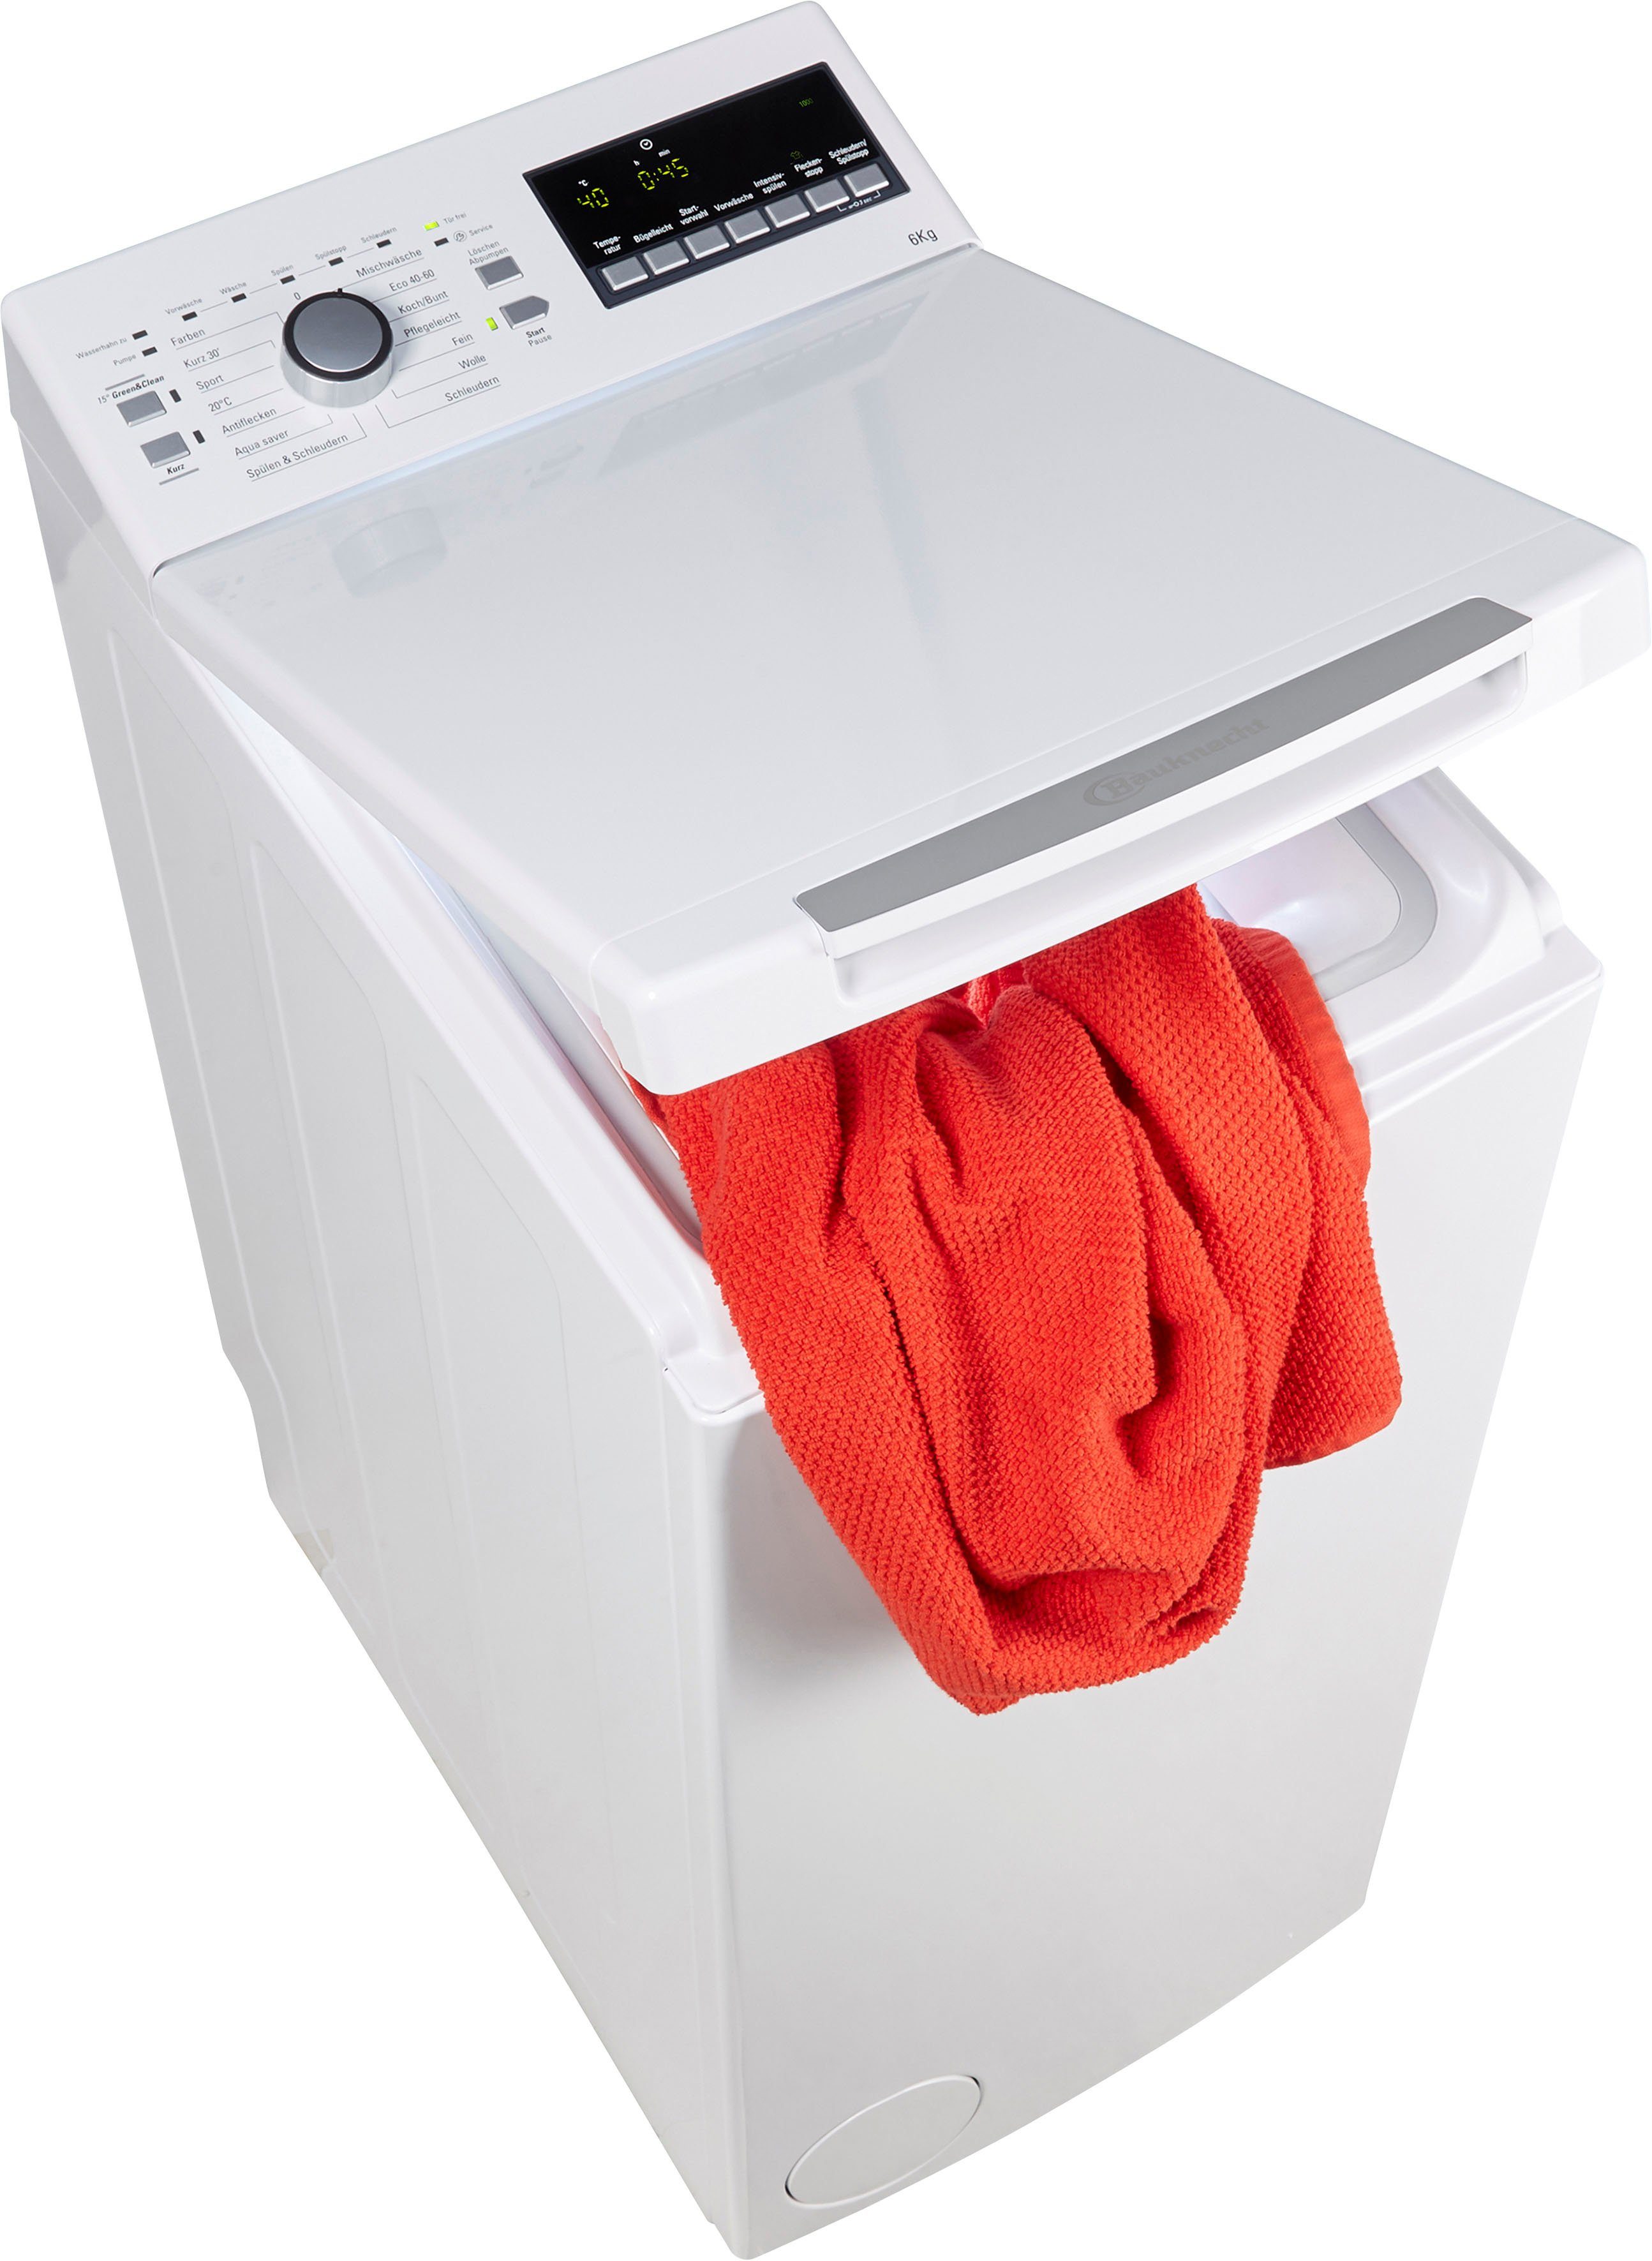 BAUKNECHT Waschmaschine Toplader WAT 6312 N, 6 kg, 1200 U/min